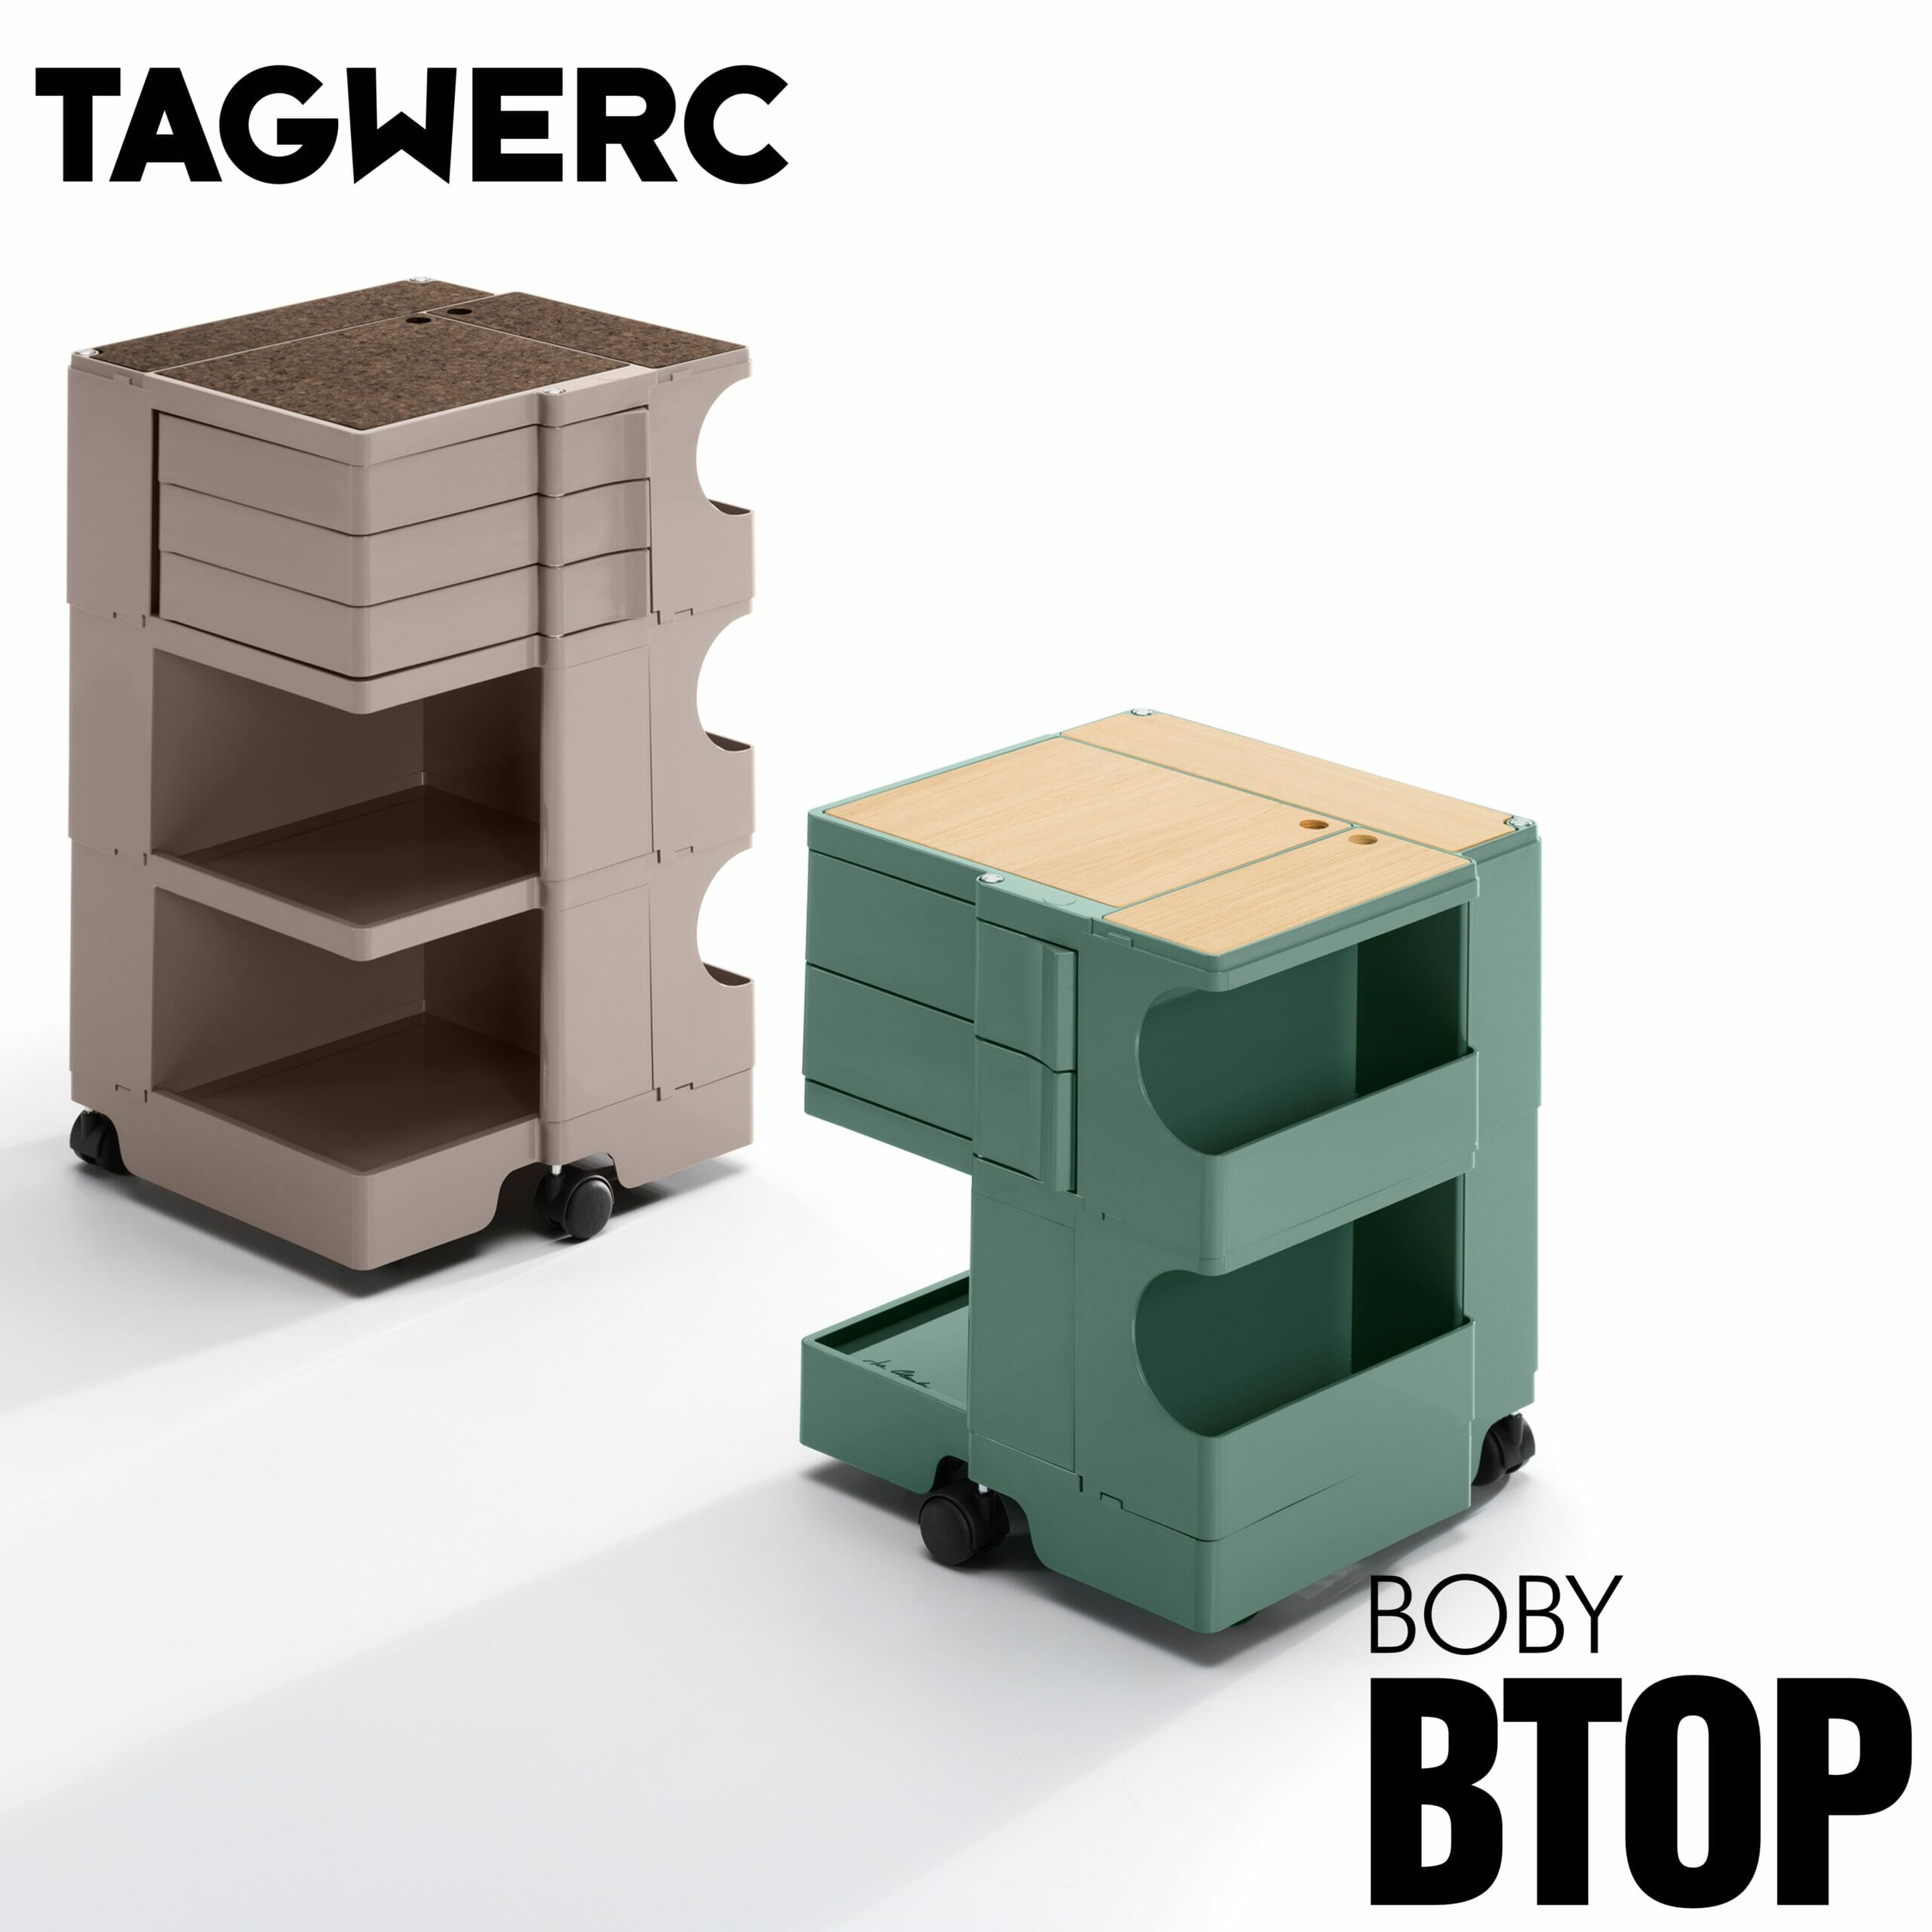 BTOP Rollcontainer für Auflage B—Line Natur Boby - Eiche